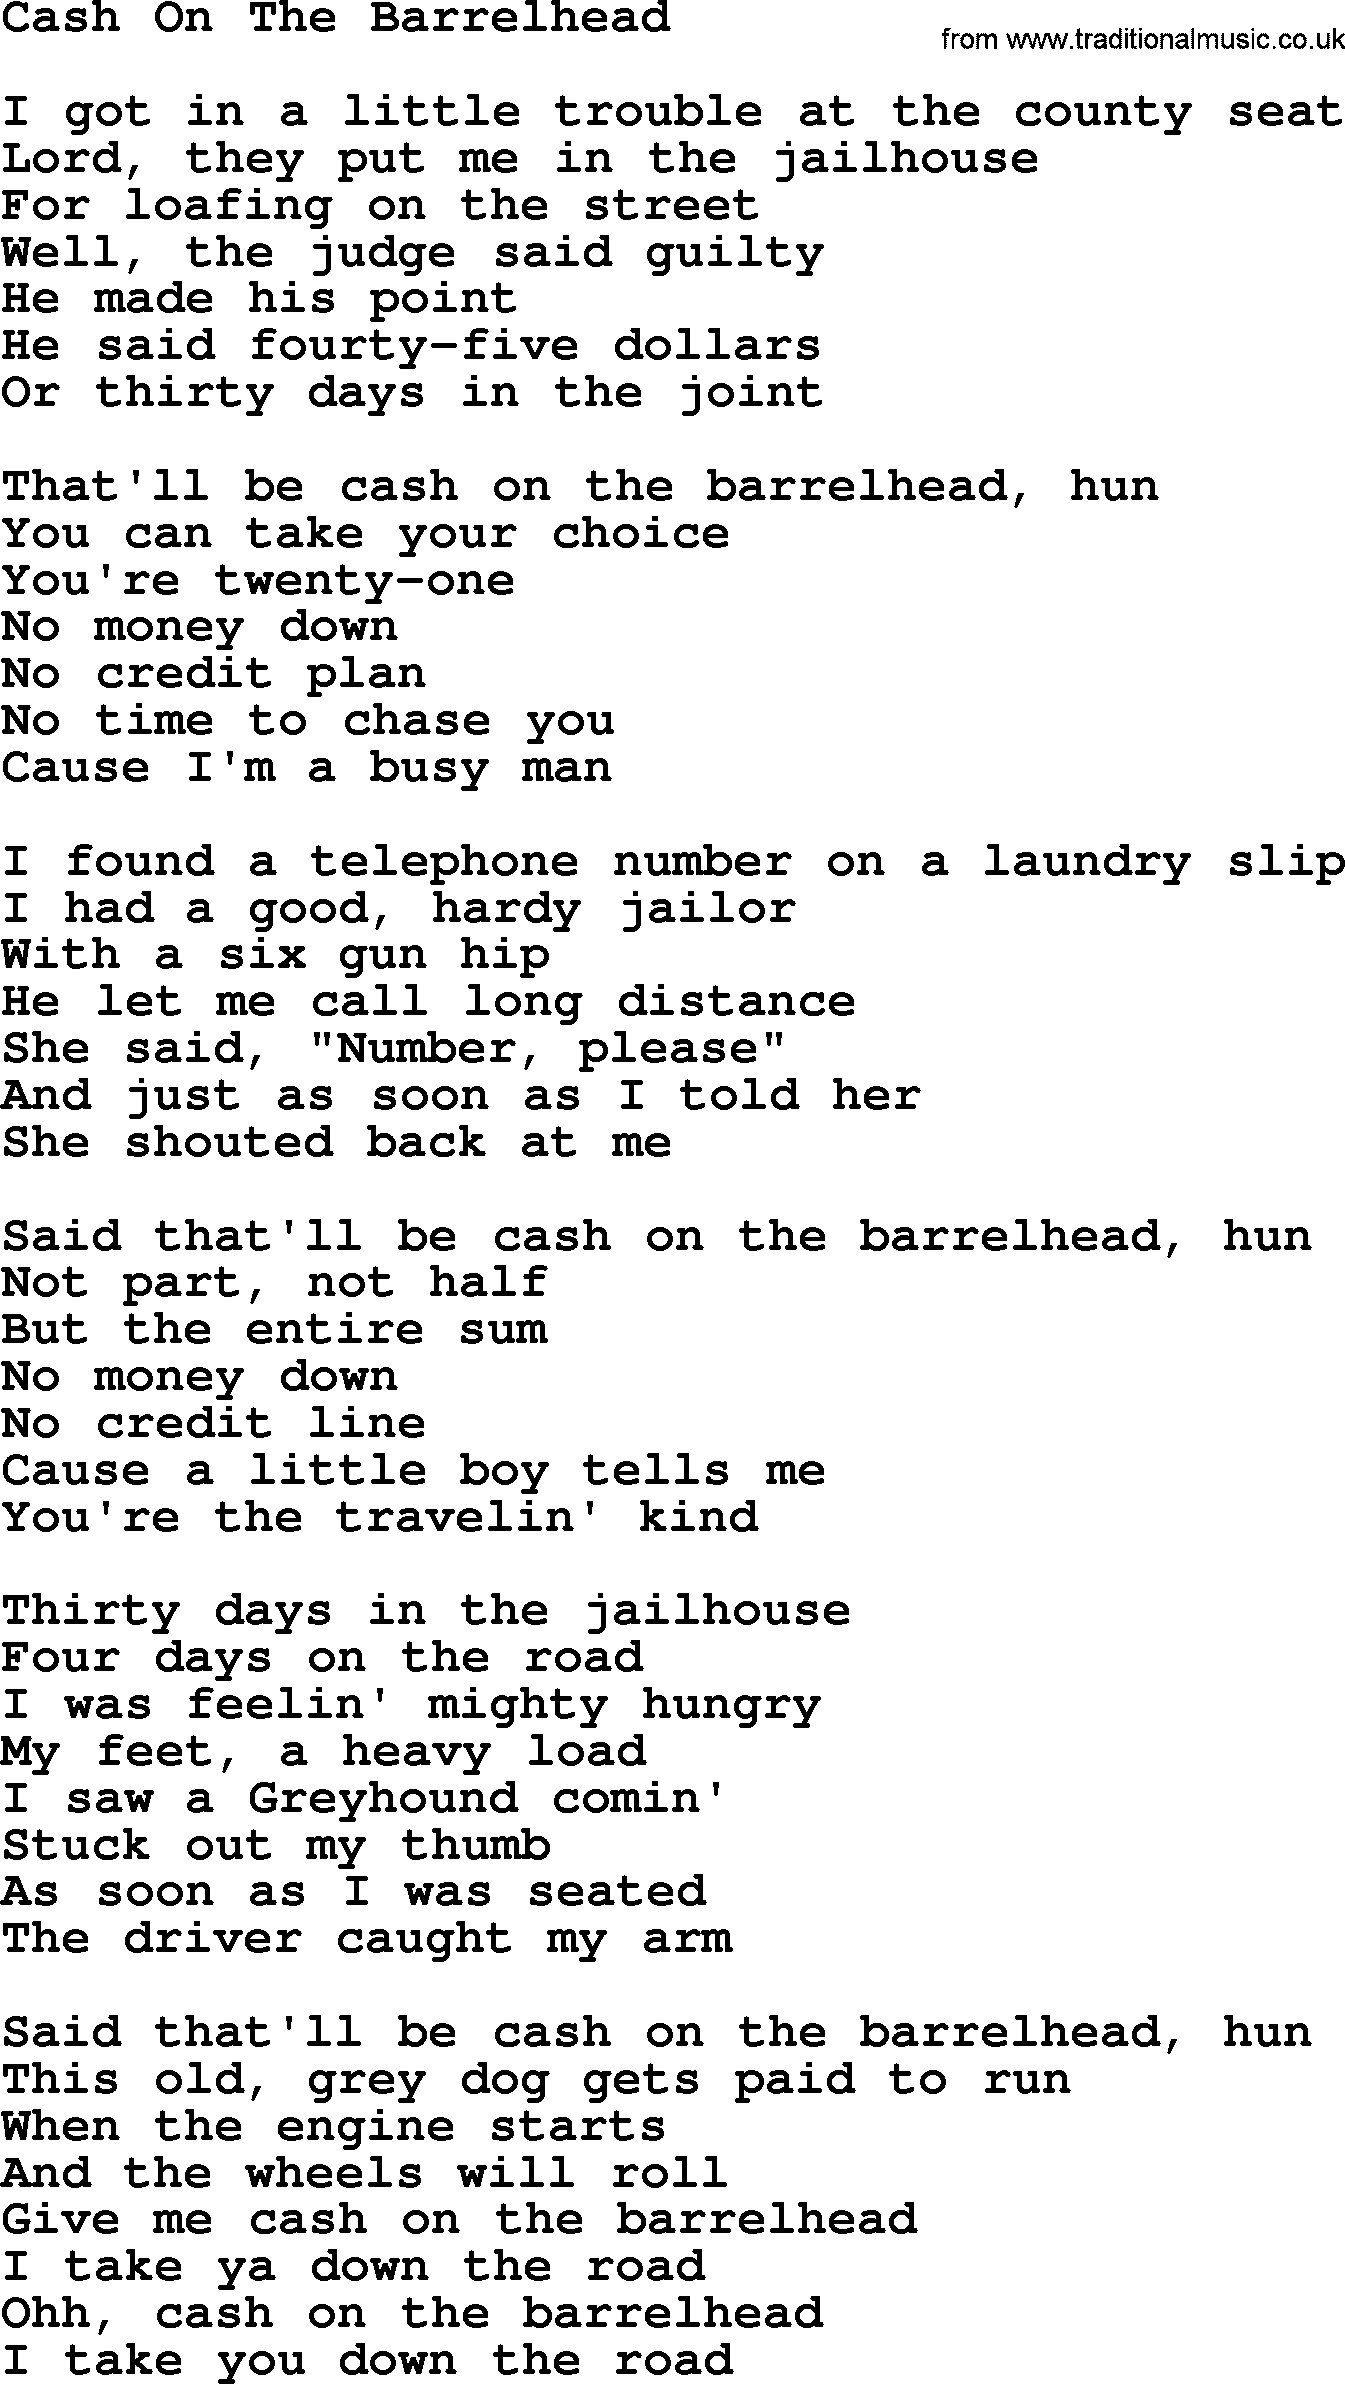 Dolly Parton song Cash On The Barrelhead.txt lyrics